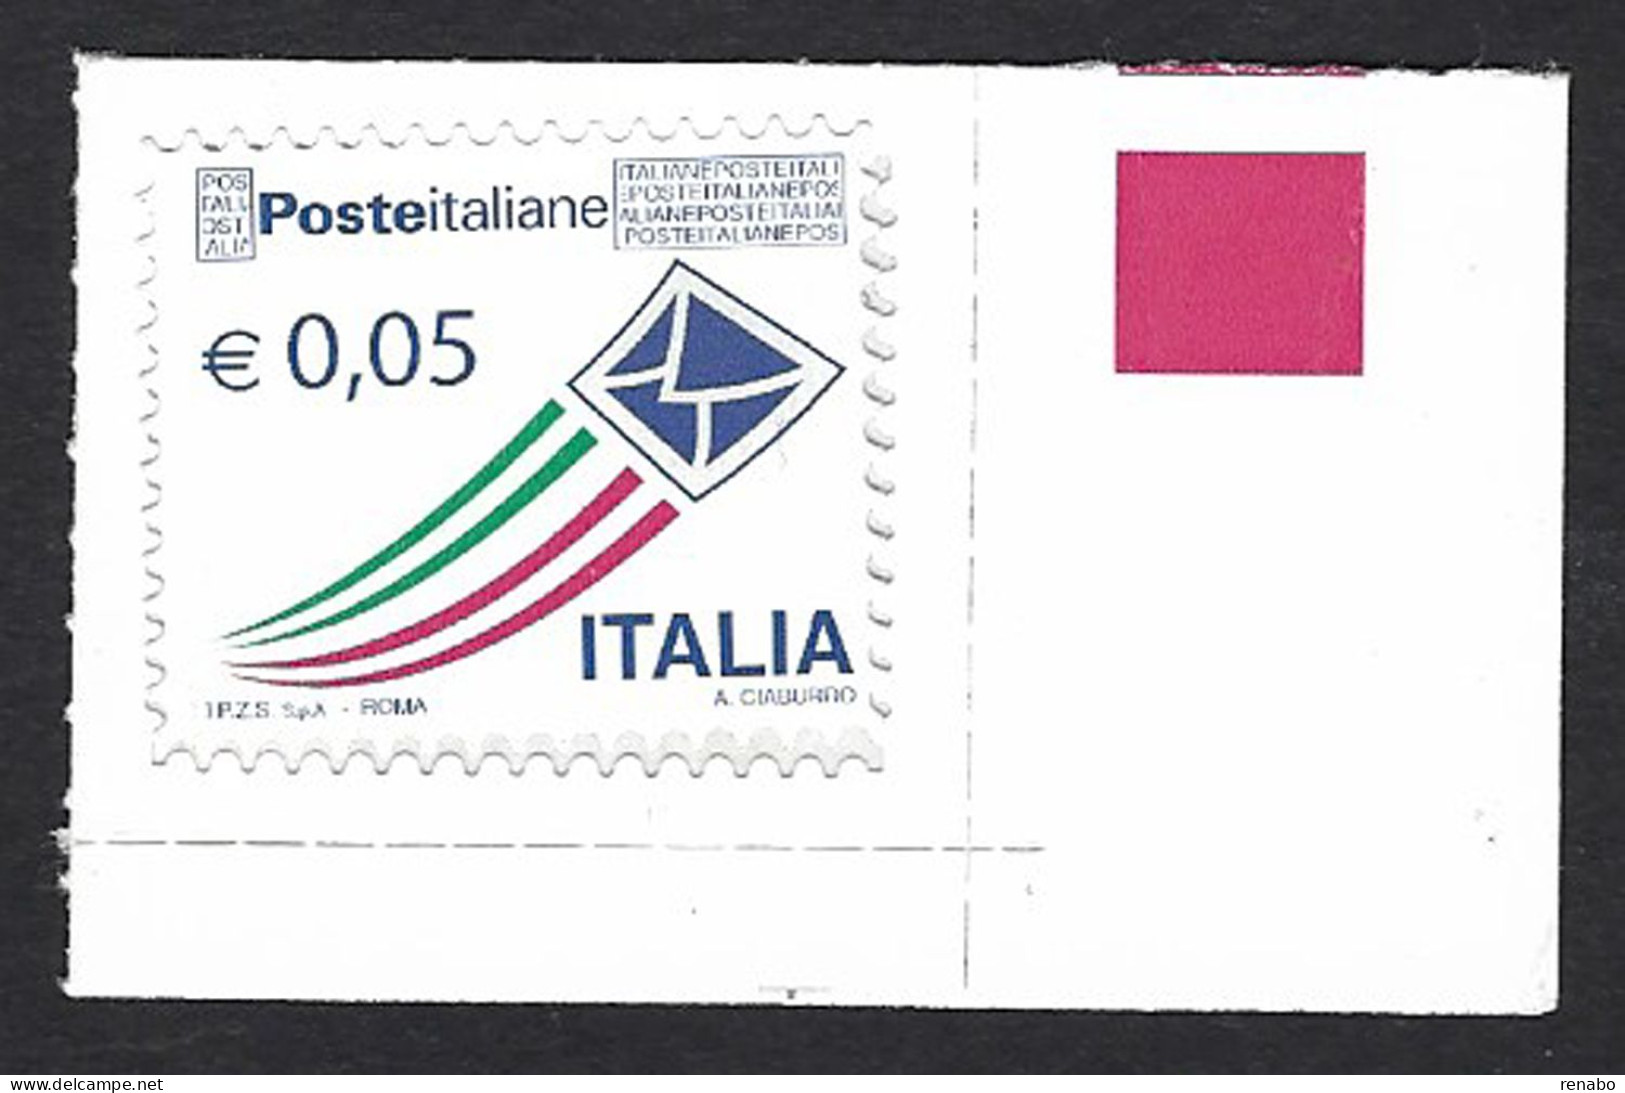 Italia 2010; Posta Italiana Da € 0,05 ; Angolo Inferiore Destro. - 2001-10:  Nuovi